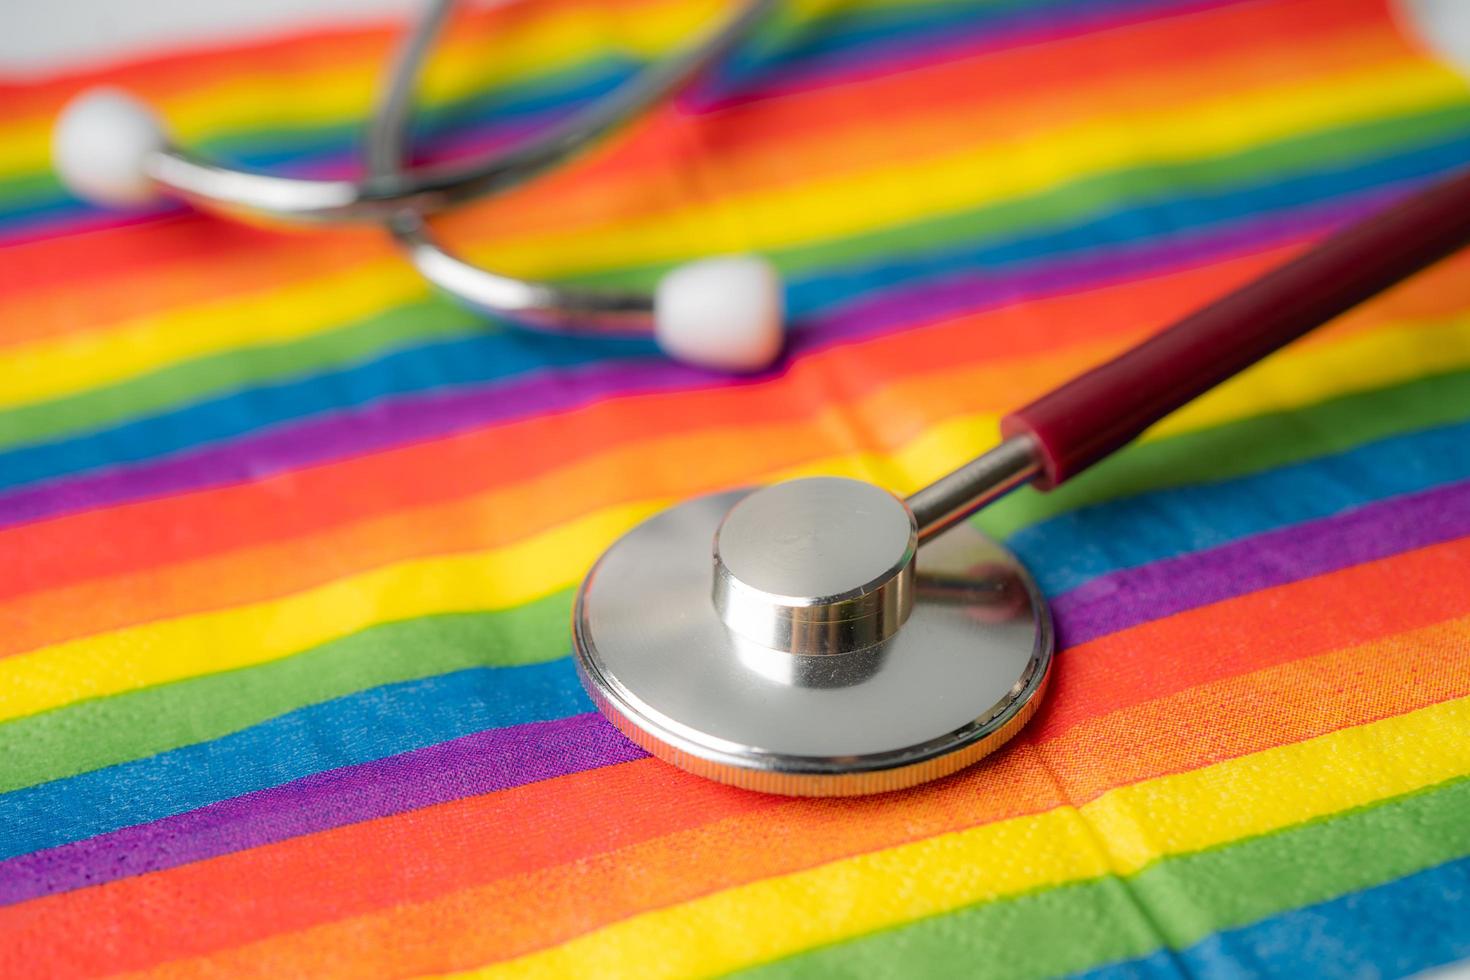 svart stetoskop på regnbågsflaggabakgrund, symbol för HBT stolthet månad firar årliga i juni sociala, symbol för homosexuella, lesbiska, bisexuella, transpersoner, mänskliga rättigheter och fred. foto